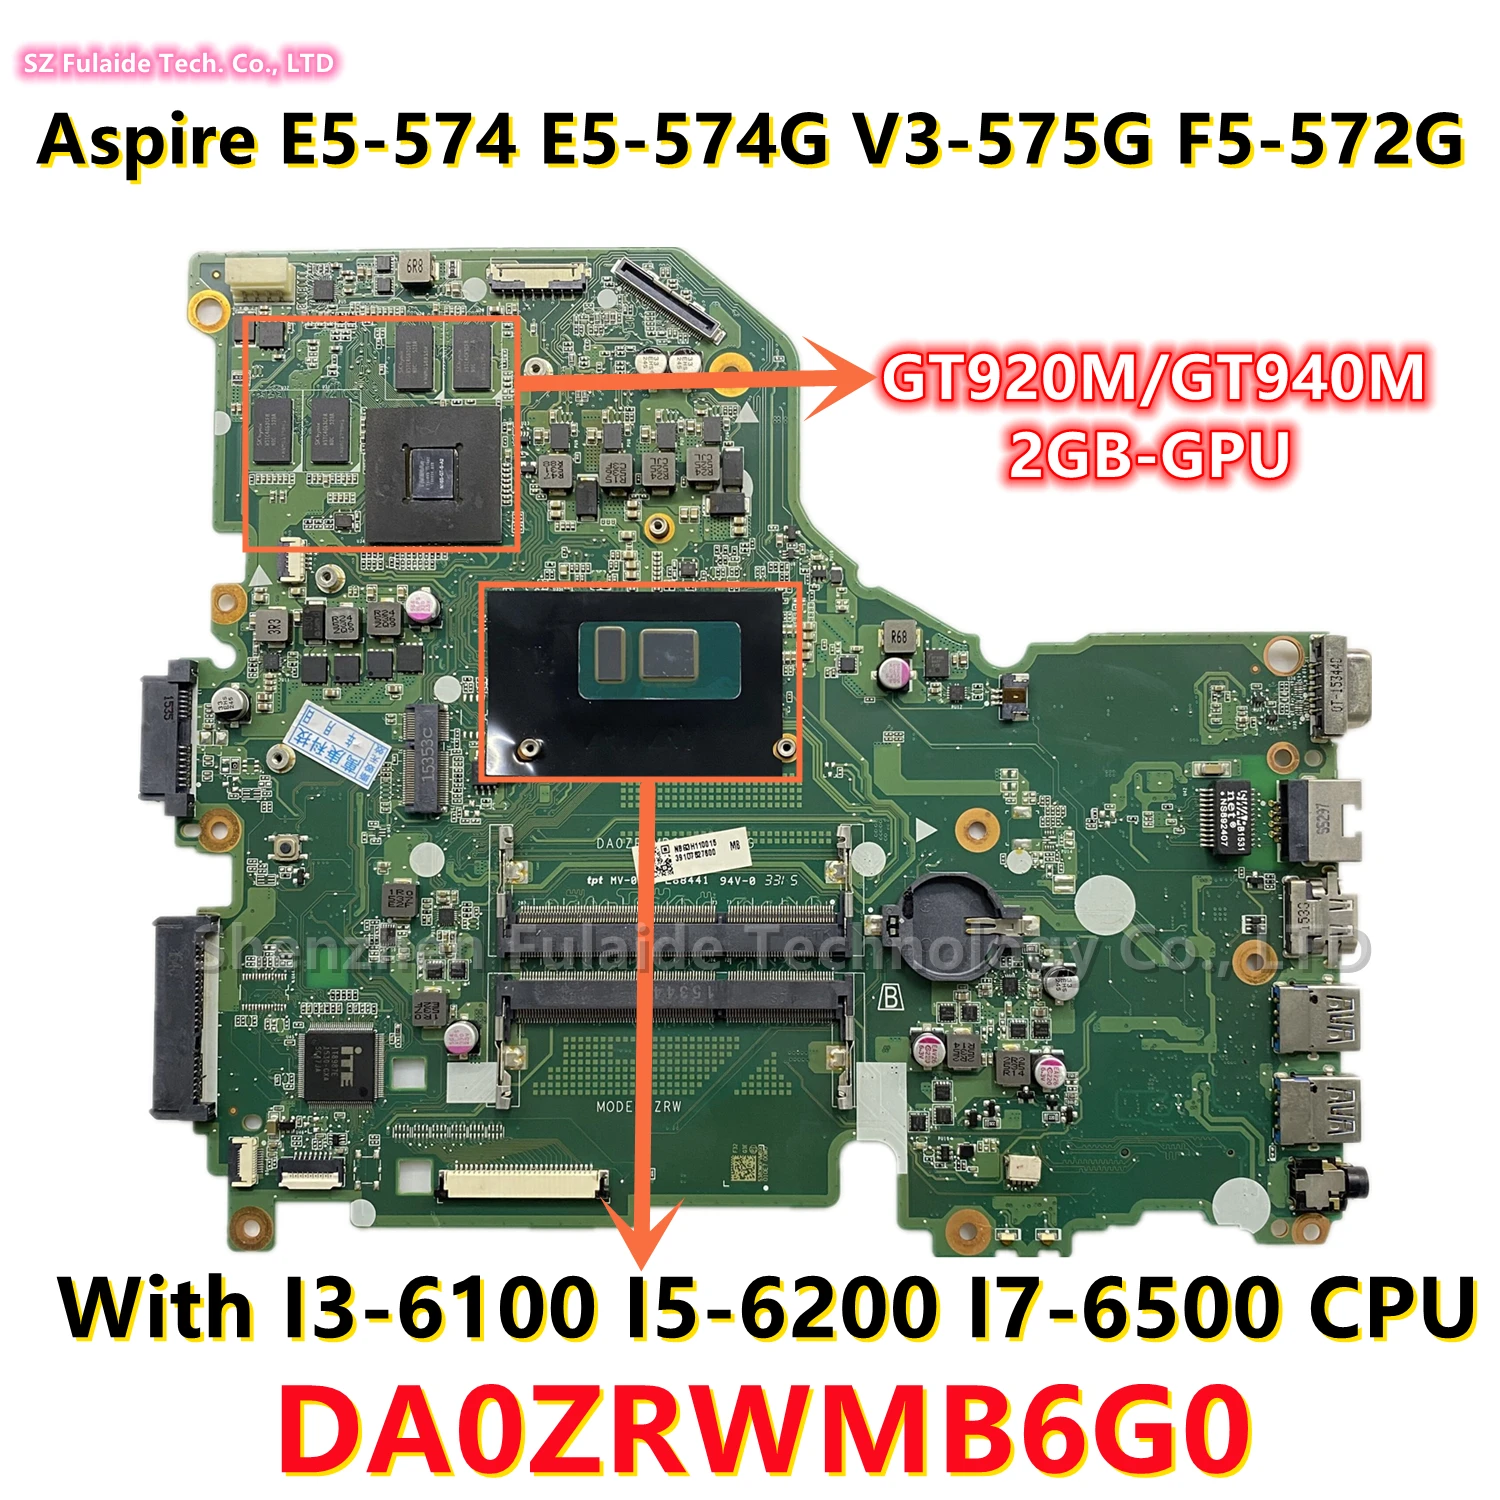 

DA0ZRWMB6G0 REV:G For Acer E5-574 E5-574G V3-575G F5-572G Laptop Motherboard I3-6100 I5-6200 I7-6500 CPU GT920M/GT940M 2GB-GPU